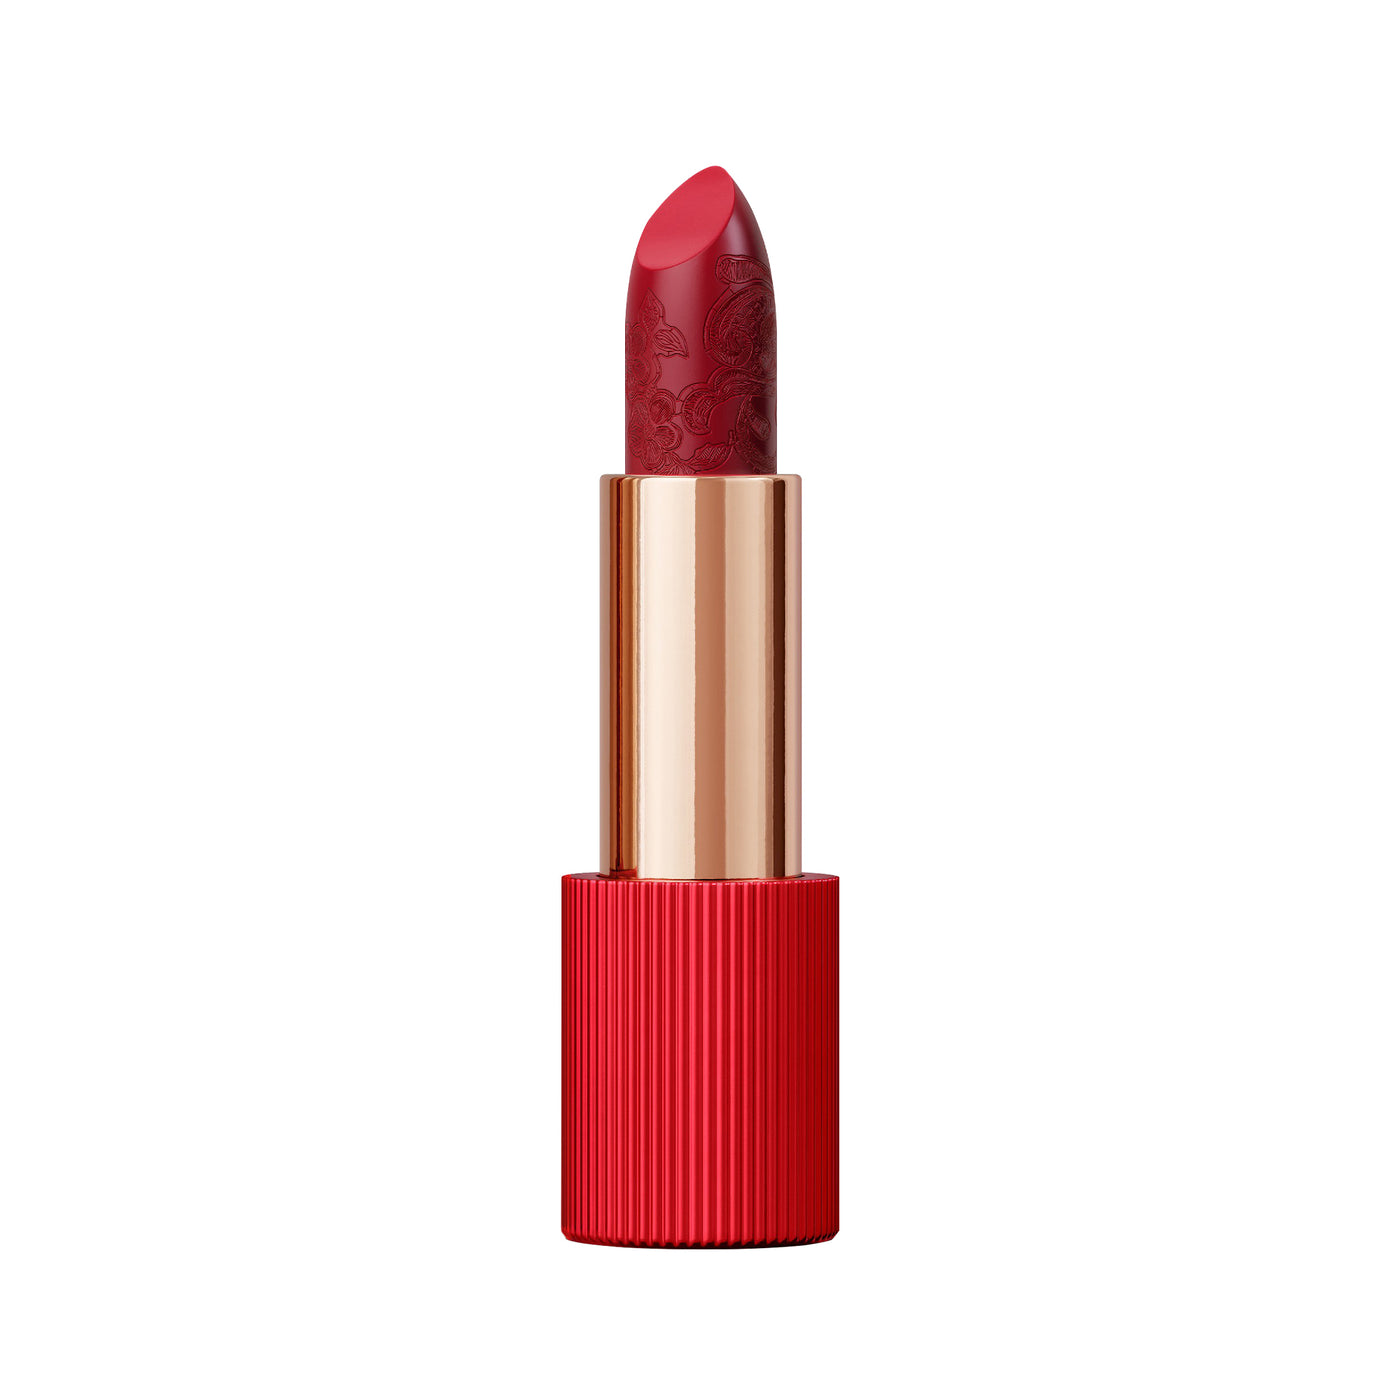 La Perla Lipstick 106 Venetian Red 3.5g